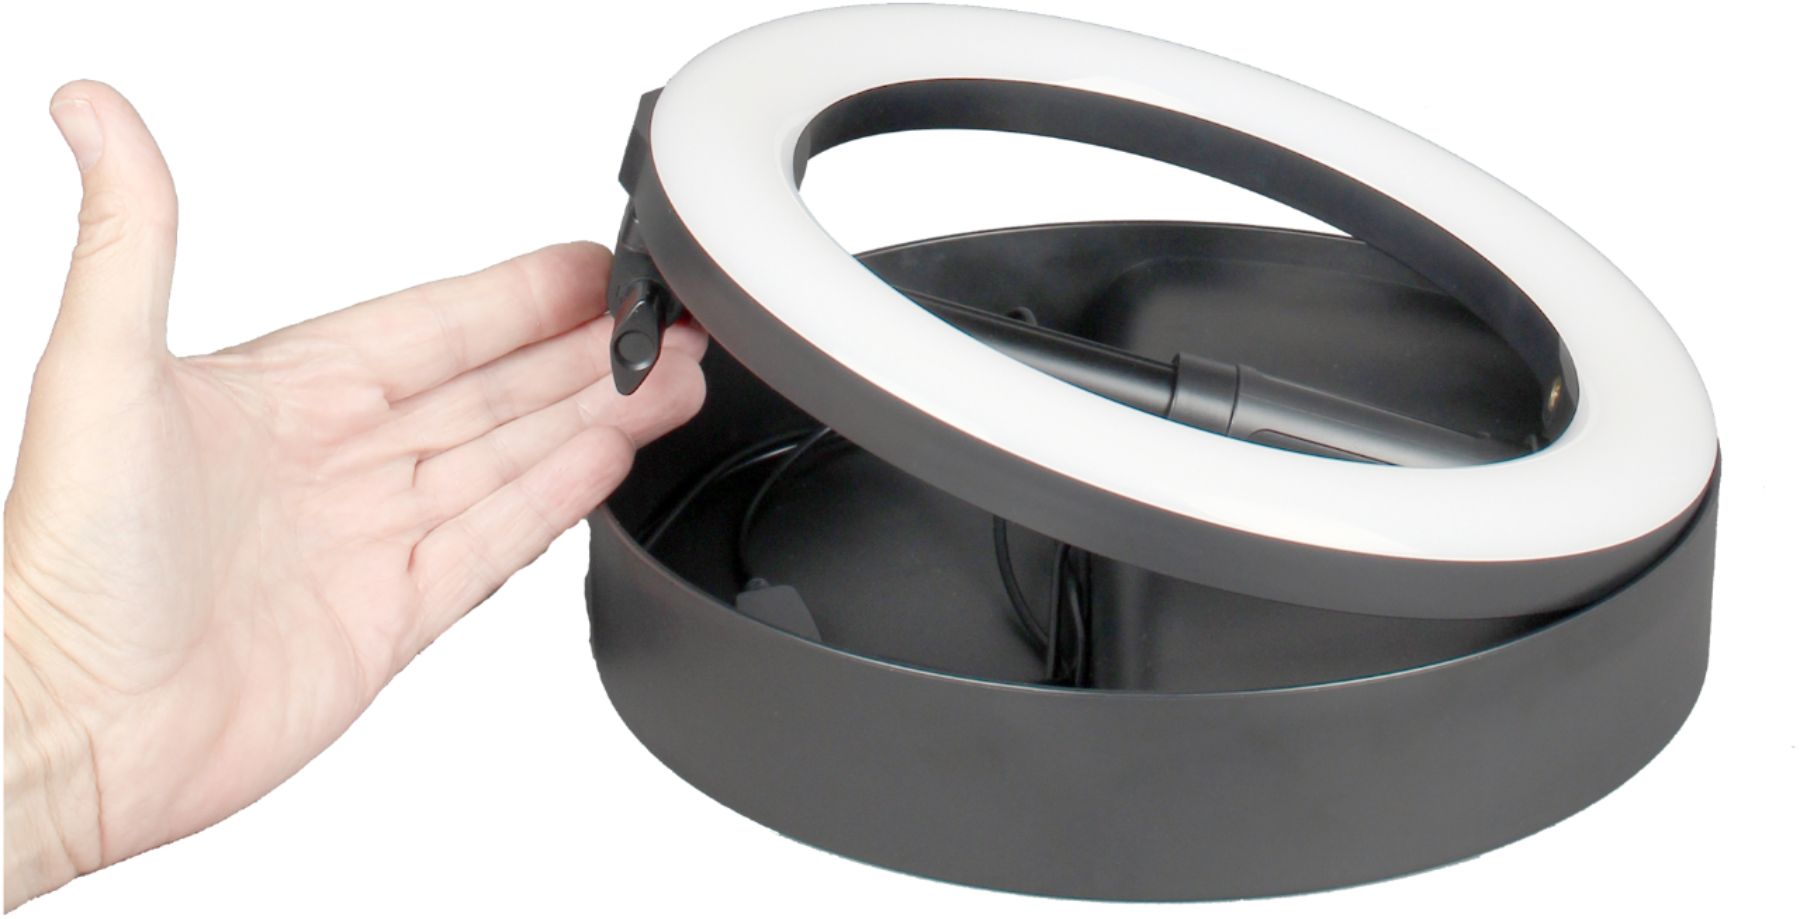 Sunpak 22 Bi-Color Ring Light Vlogging Kit with Bluetooth Remote  VL-LED640-22RLK - Best Buy